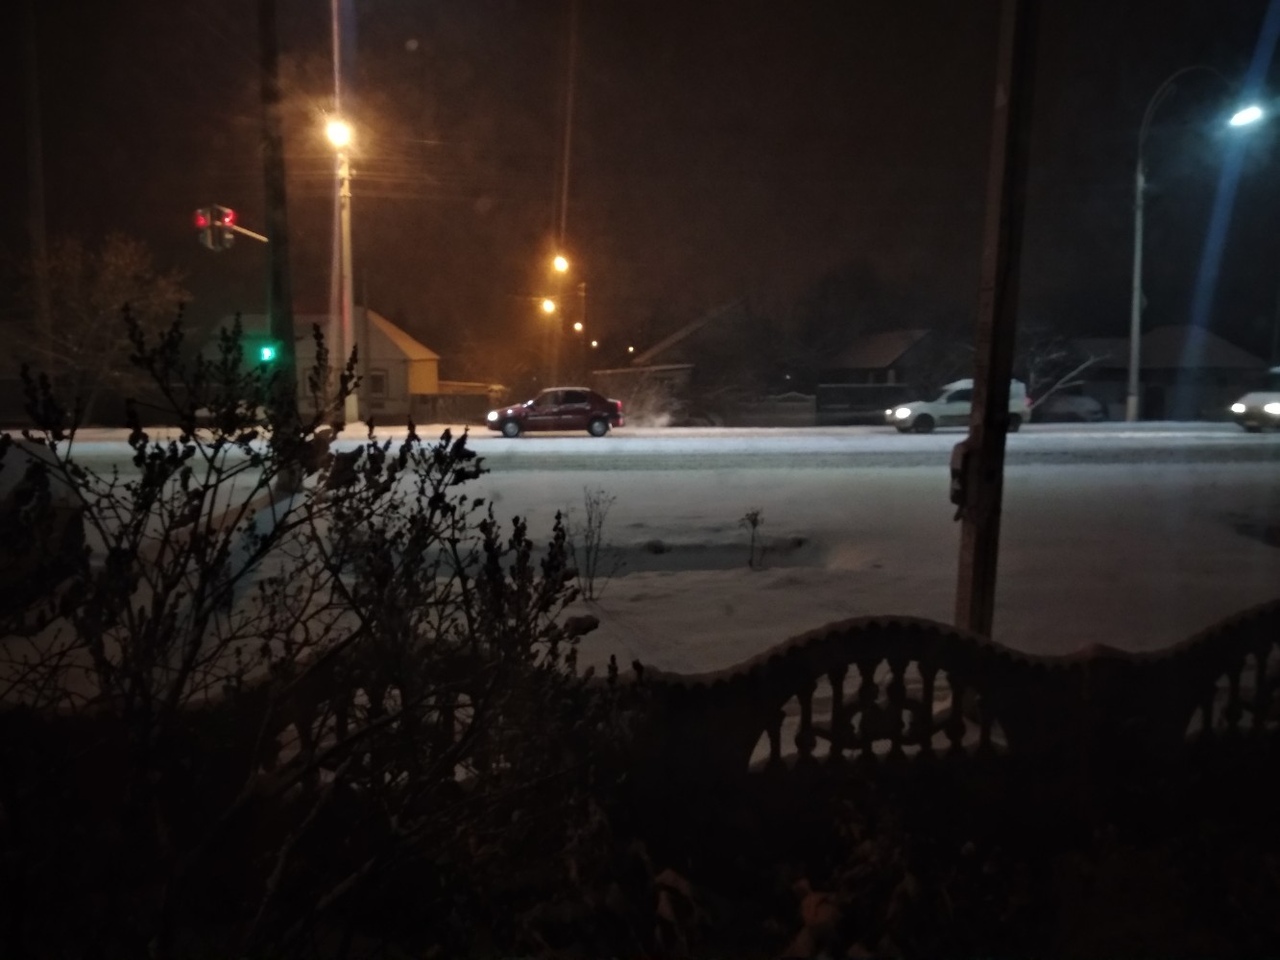 Снег выпавший ночью и еще не изборожденный. Ночной снежный Белгород. Снег ночь Белгороде. Белгород в снегу ночью атмосферные кадры. Новая жизнь Белгород ночью зима.